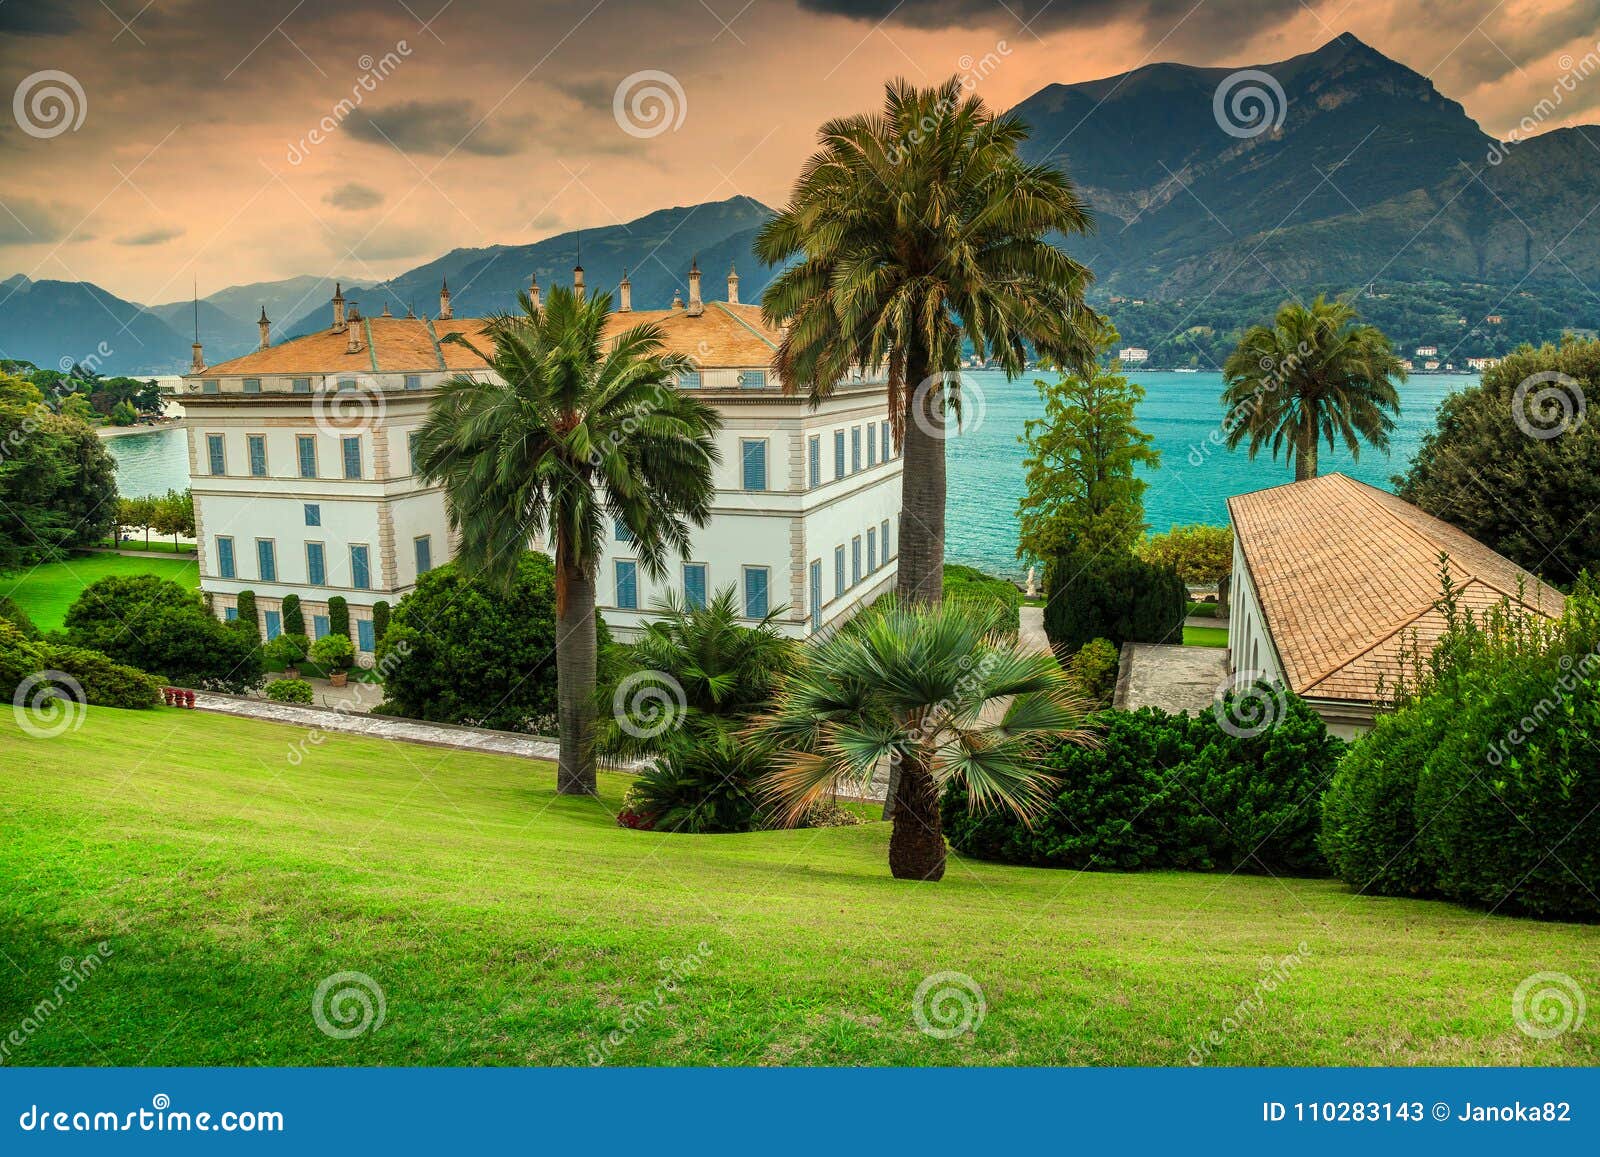 majestic ornamental garden with villa melzi in bellagio, italy, europe